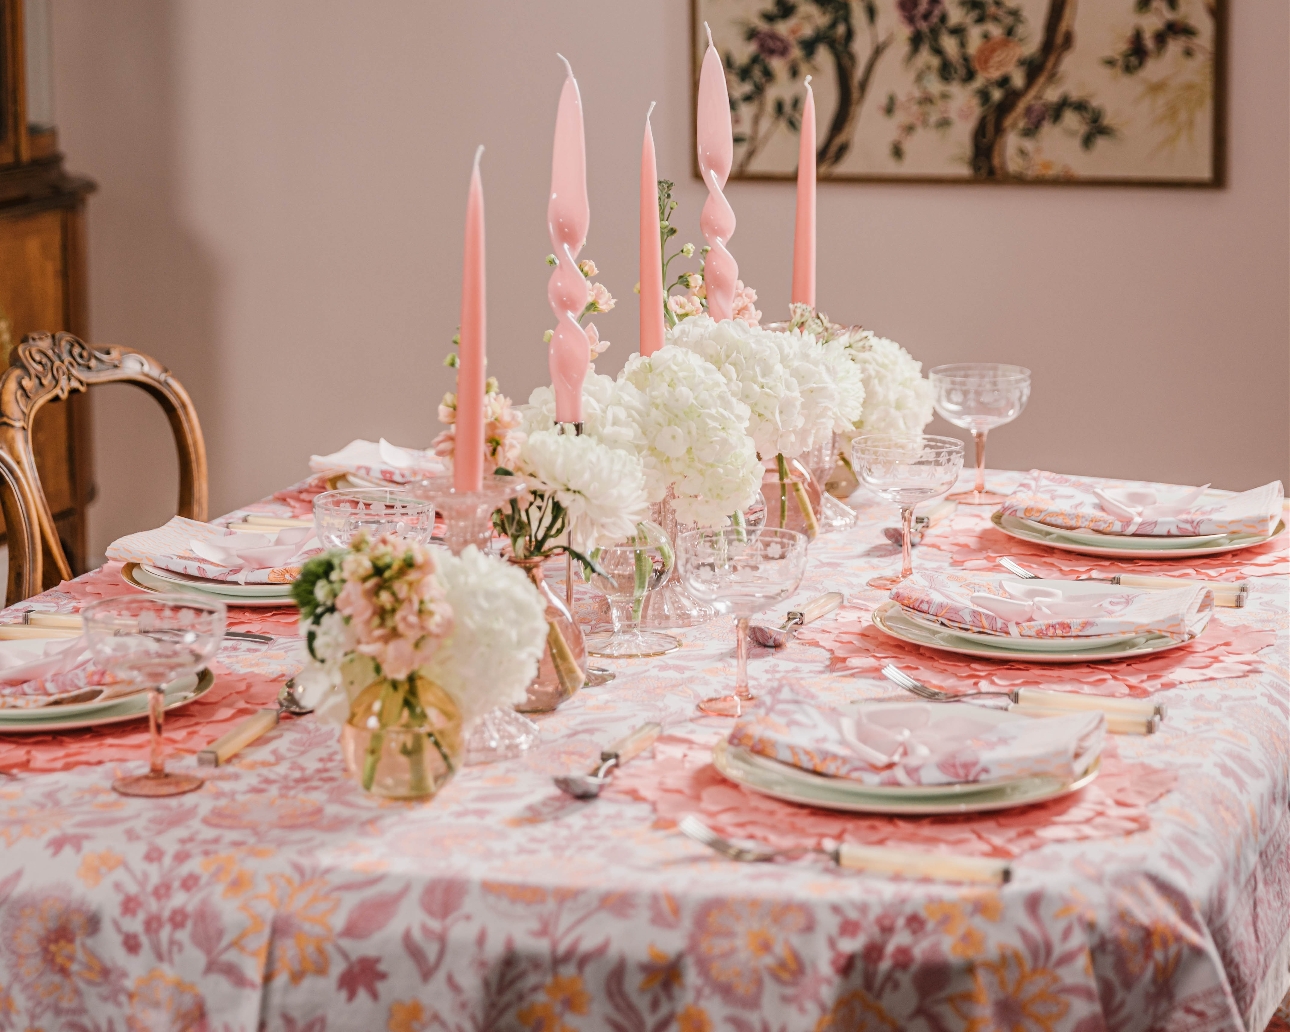 Tableware range in pink